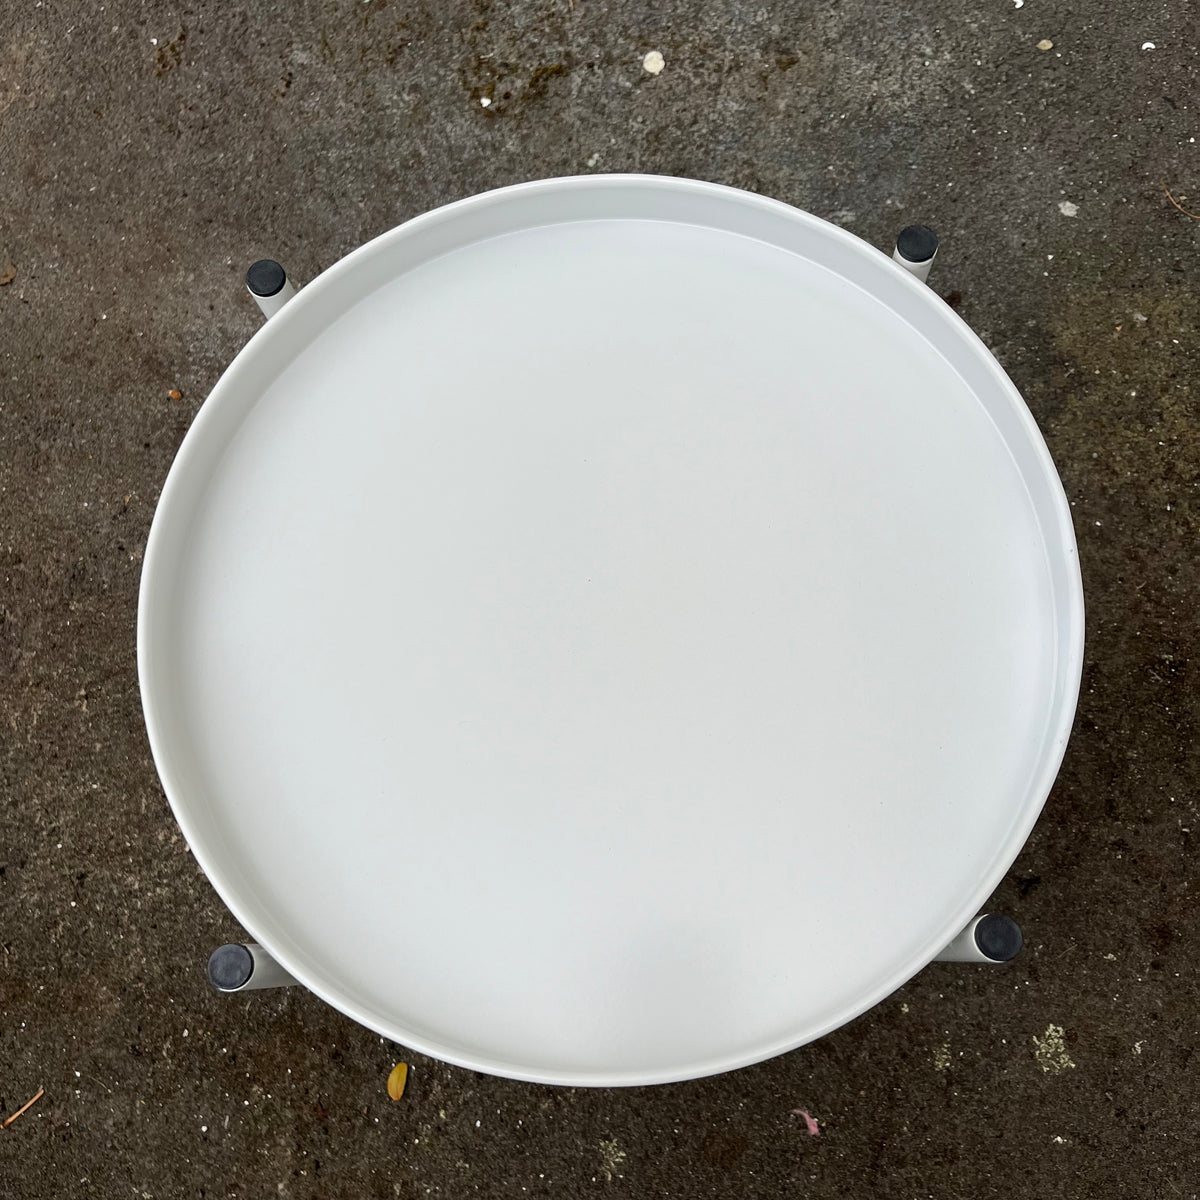 Sofia Round Side Table - White